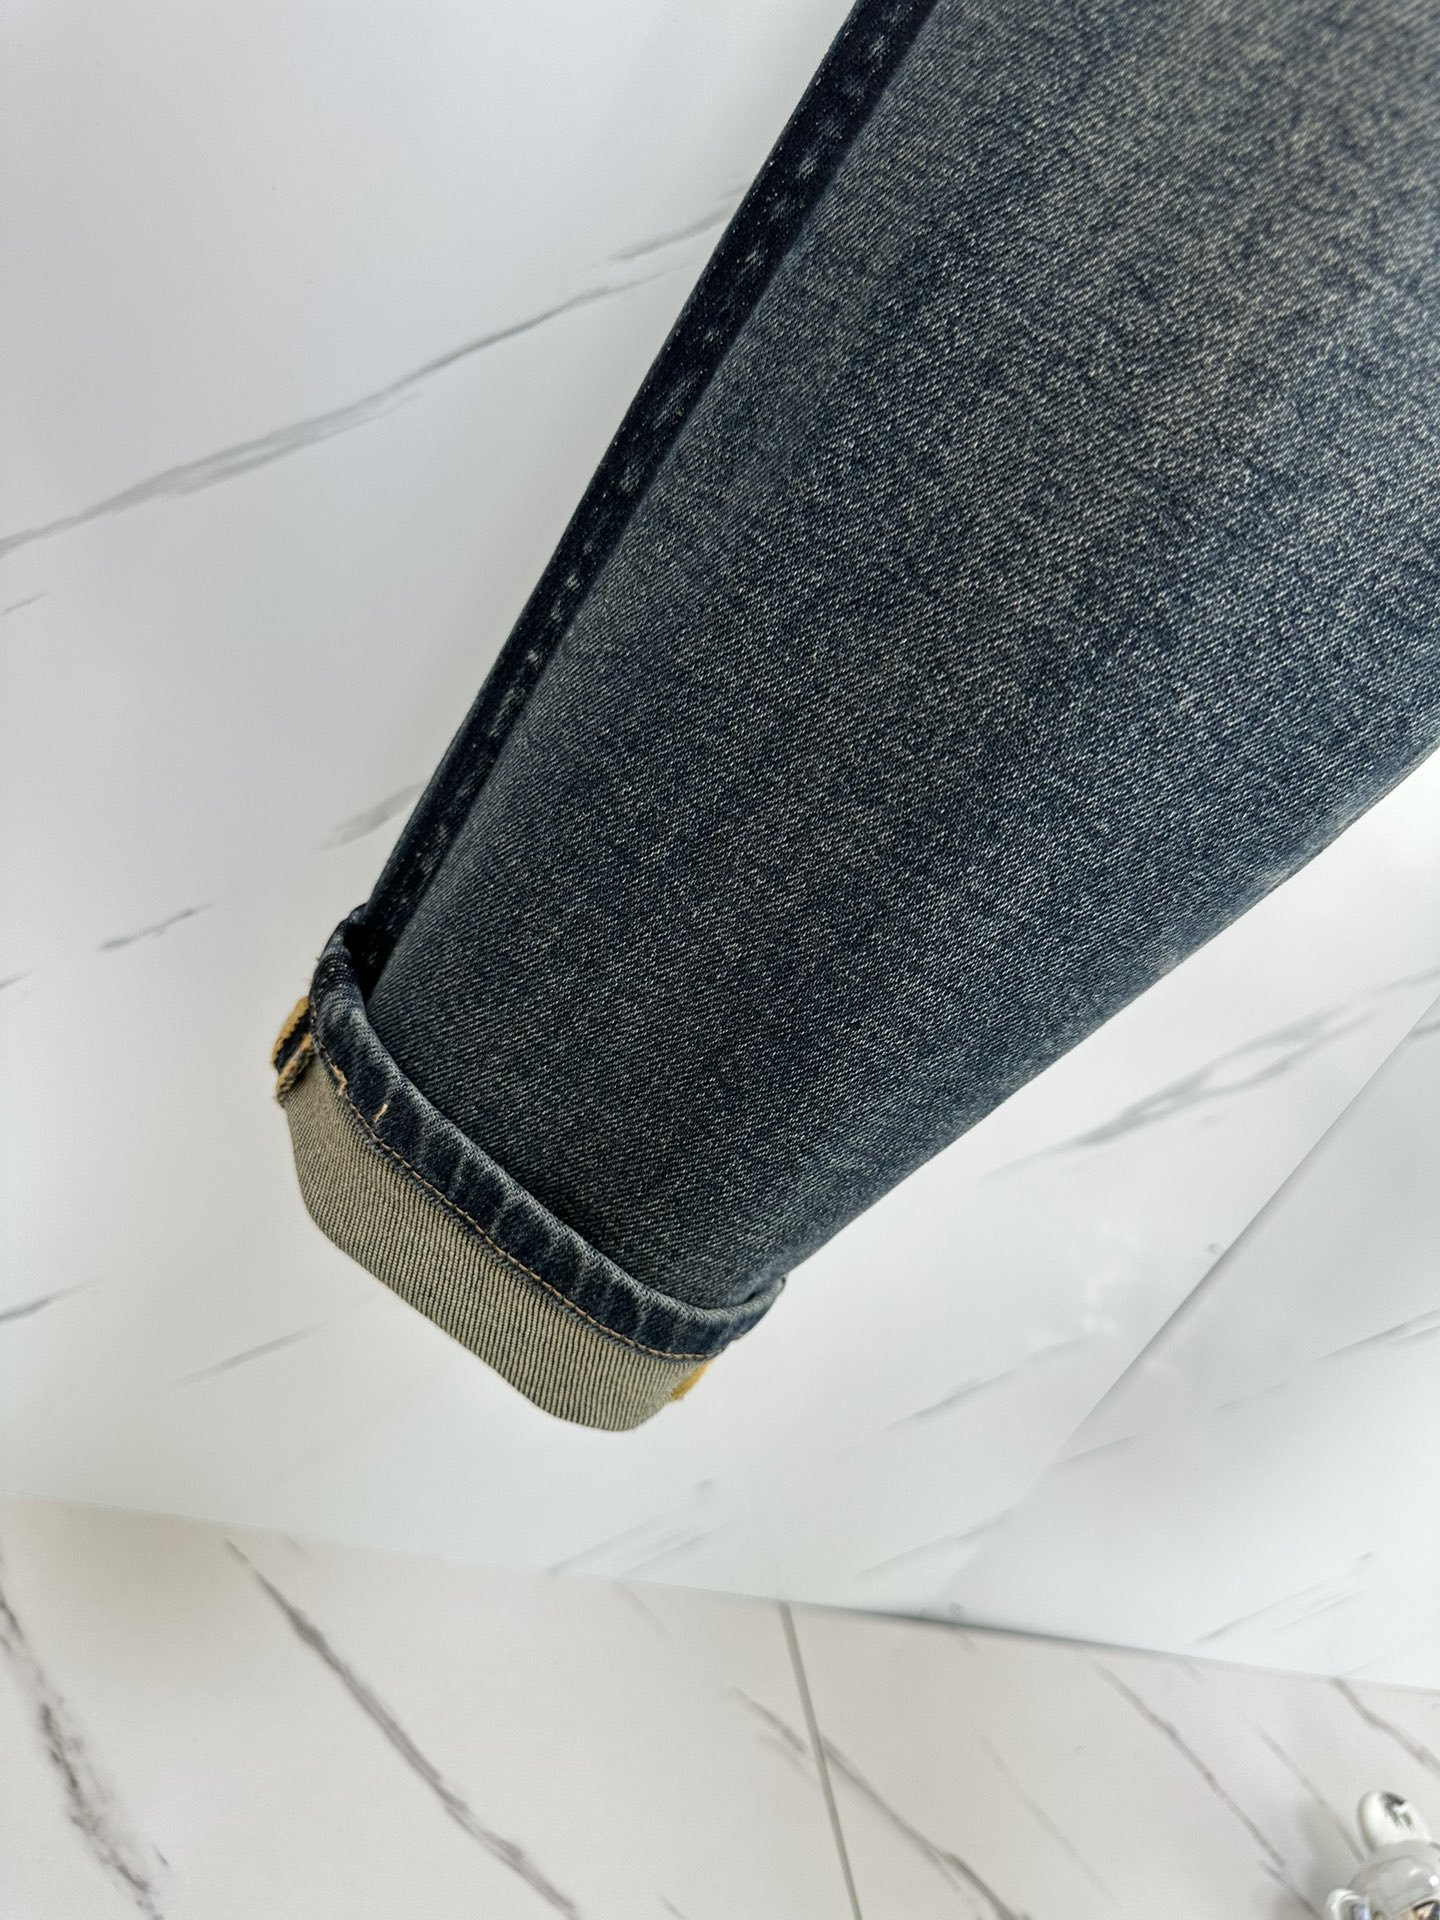 巴黎世家2023秋冬新品男士丹宁小直筒修身牛仔裤经典意大利的丹宁牛仔裤采用的是传统的技法制作牛仔系列,产